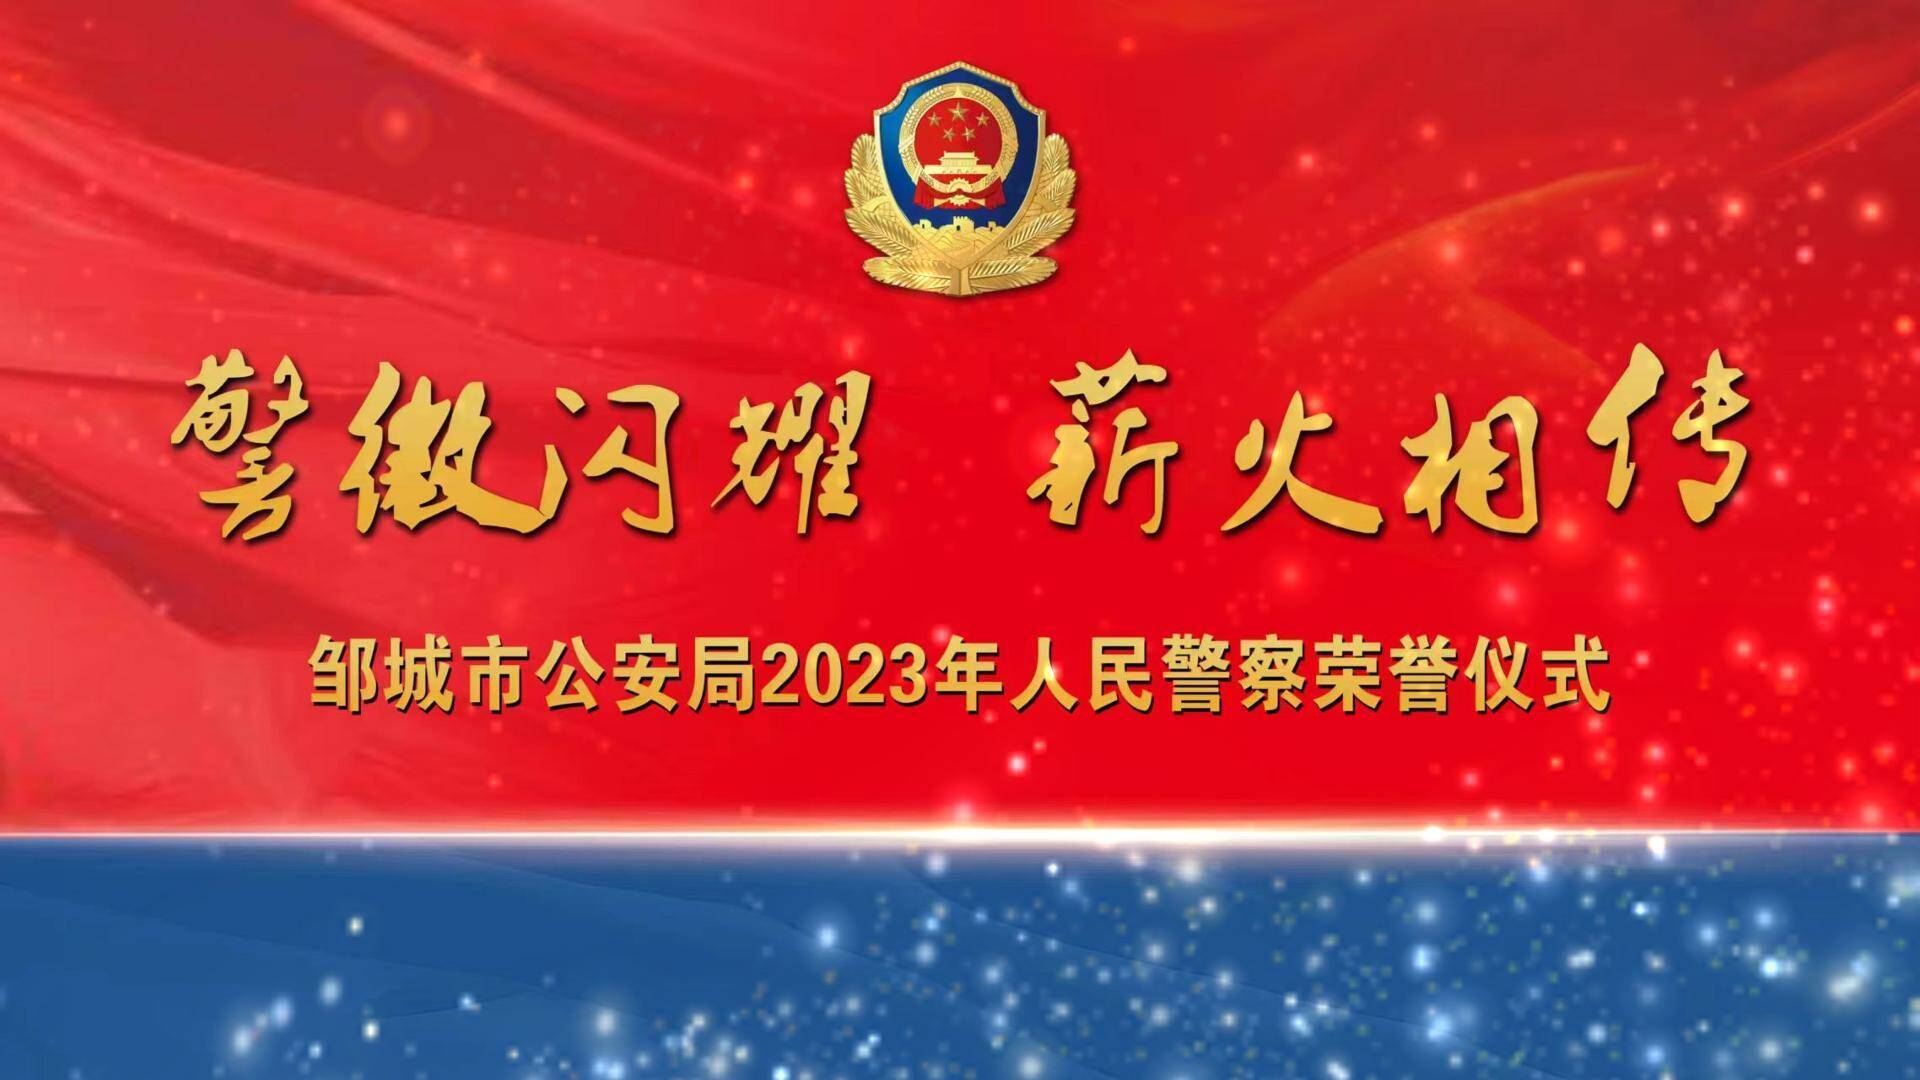 【邹视频·新闻】121秒丨邹城市公安局举行2023年人民警察荣誉仪式